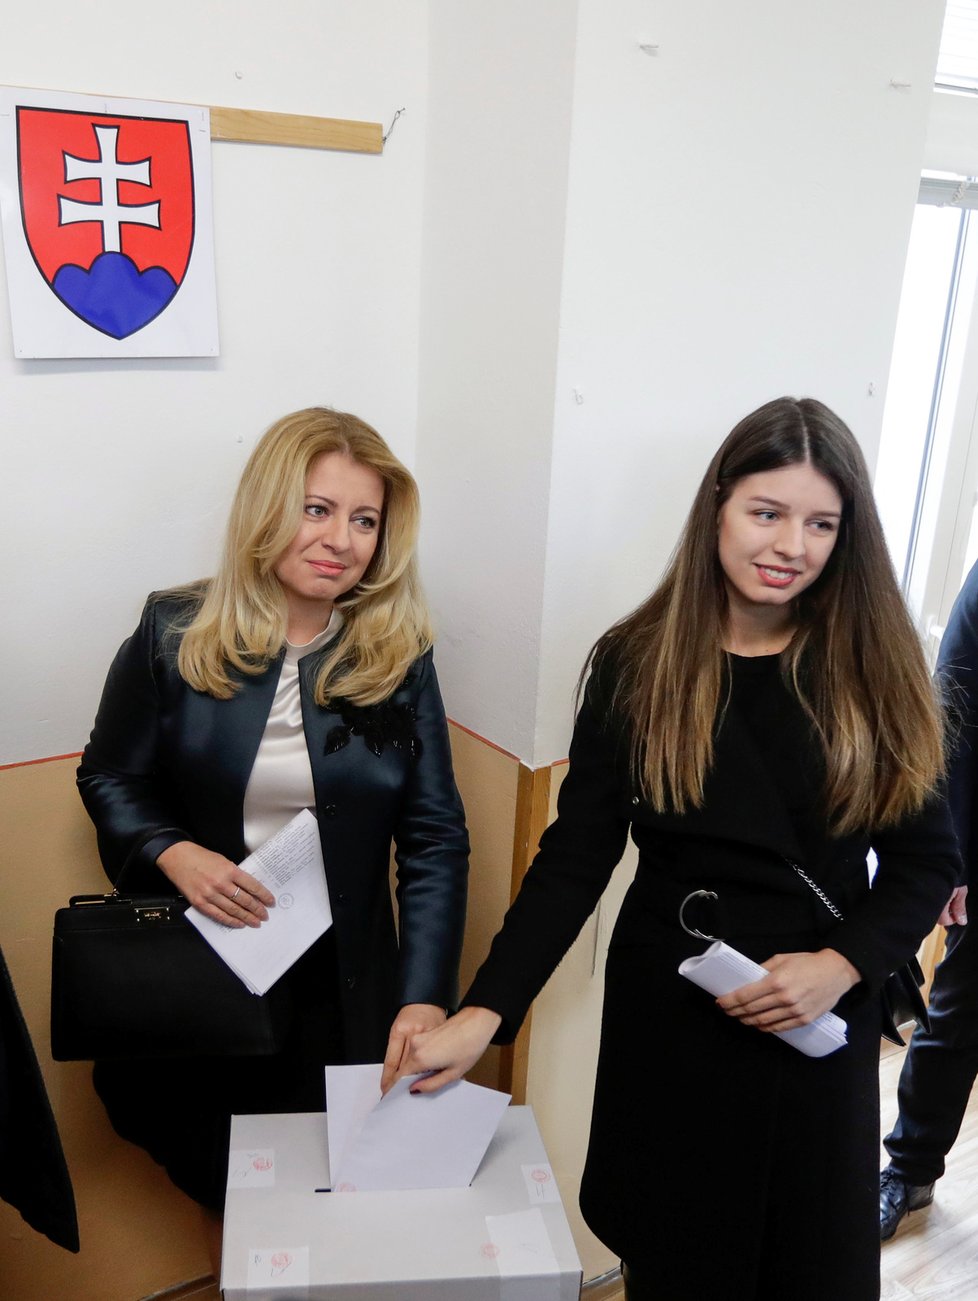 Prezidentka Zuzana Čaputová u slovenských voleb s dcerou Leou (29. 2. 2020)